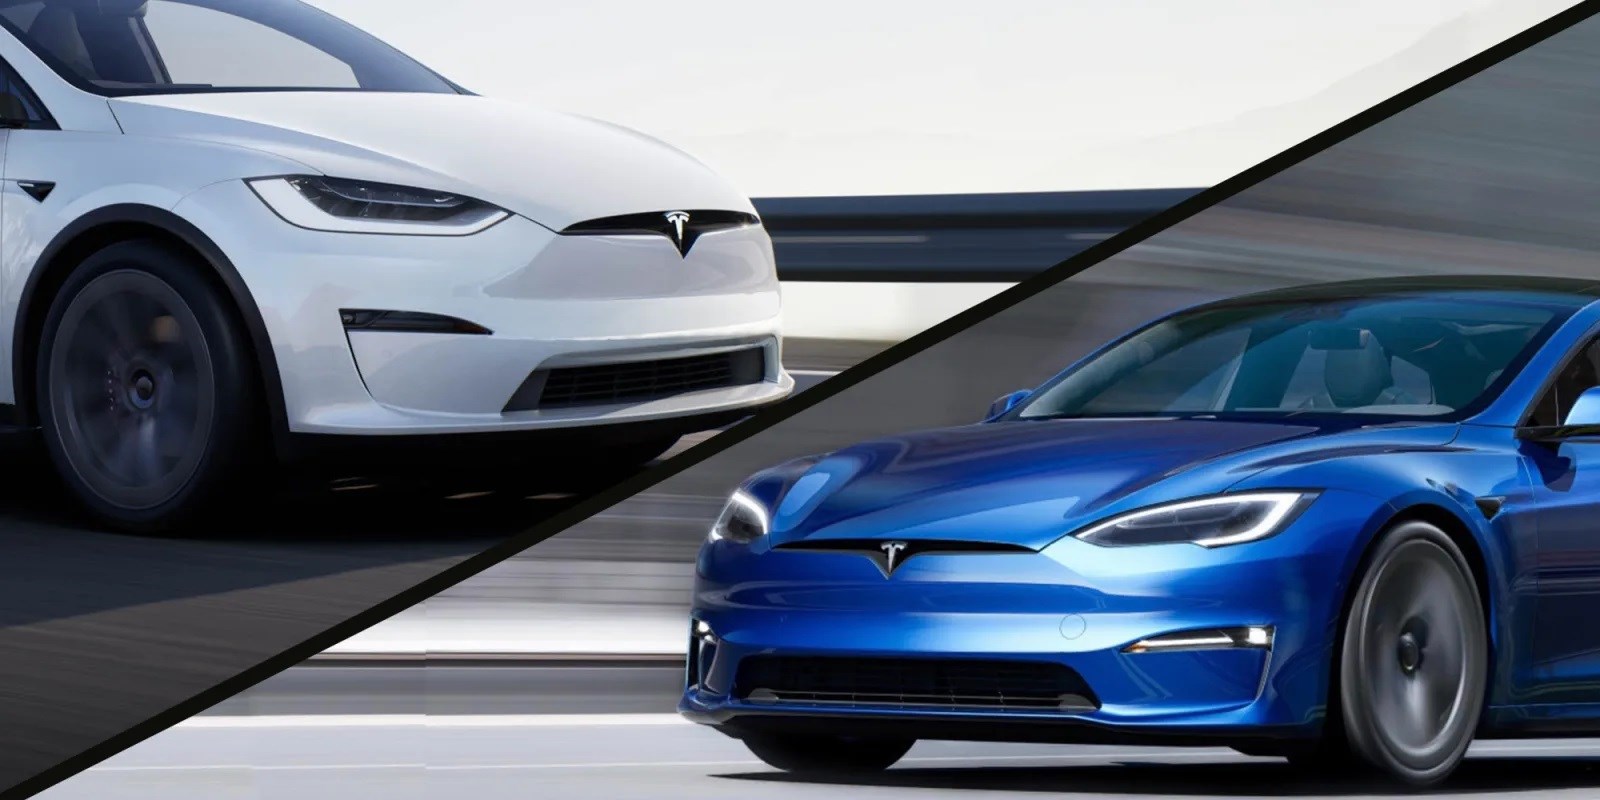 Tesla, Model S ve Model X’in fiyatlarında indirime gitti